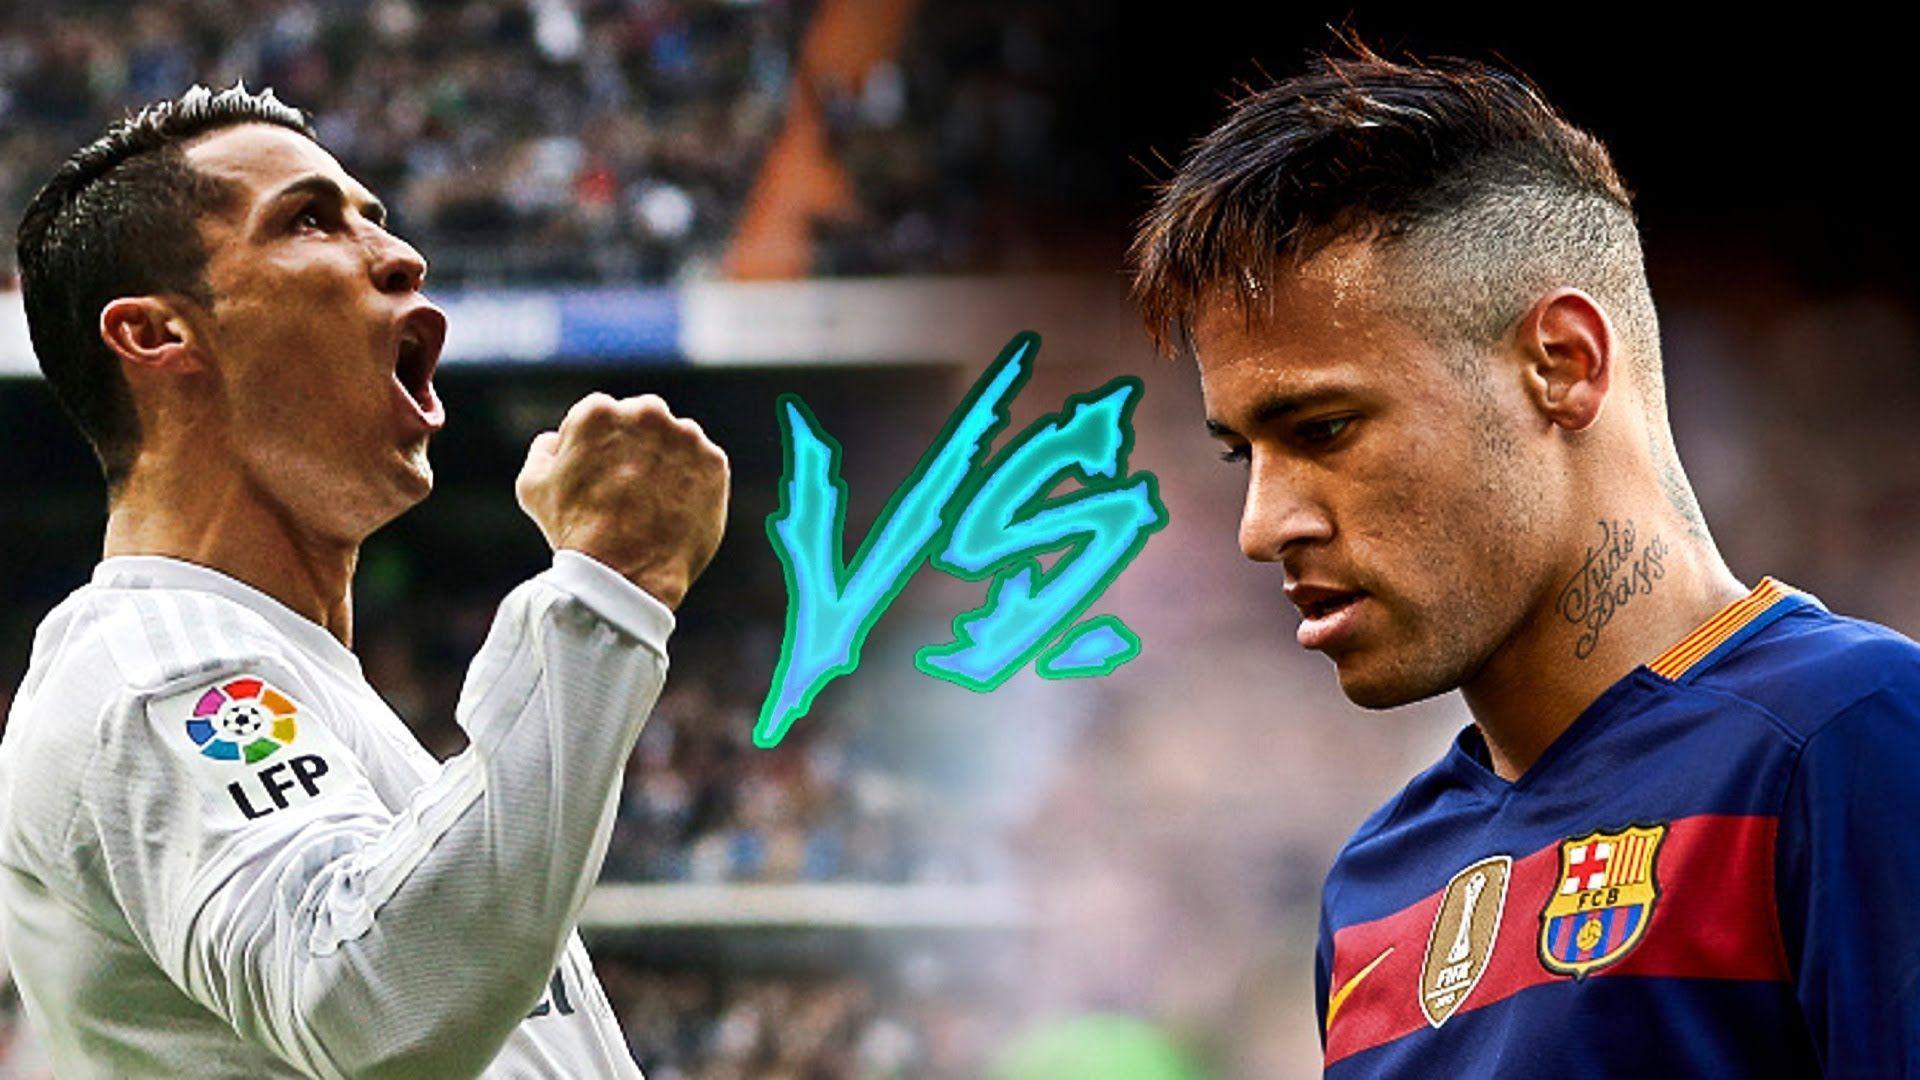 Cristiano Ronaldo vs Neymar Jr. Rasta. Skills & Goals